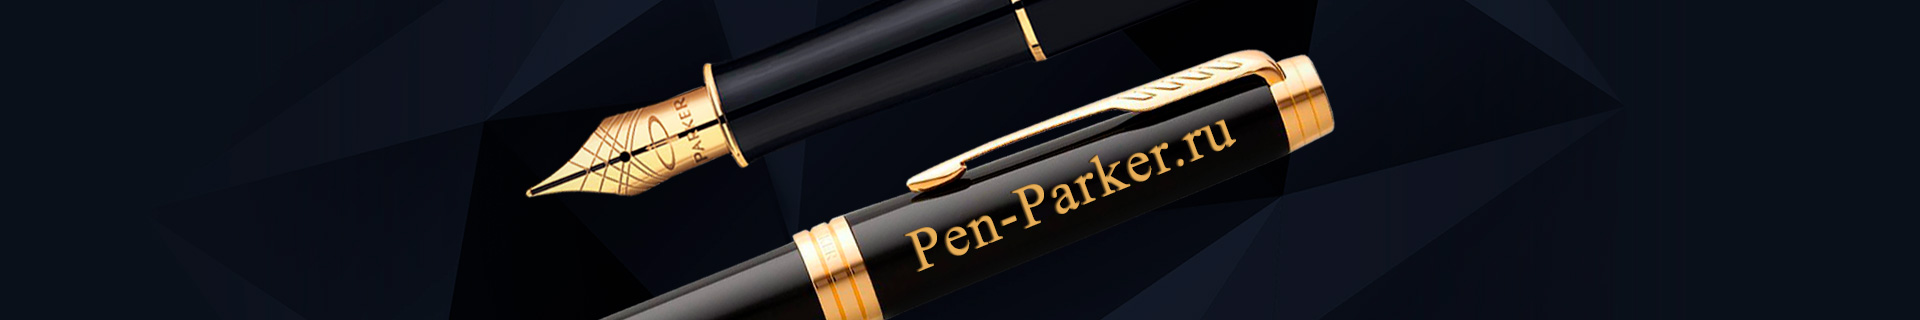 Pen-Parker: Бесплатная гравировка ручек Parker